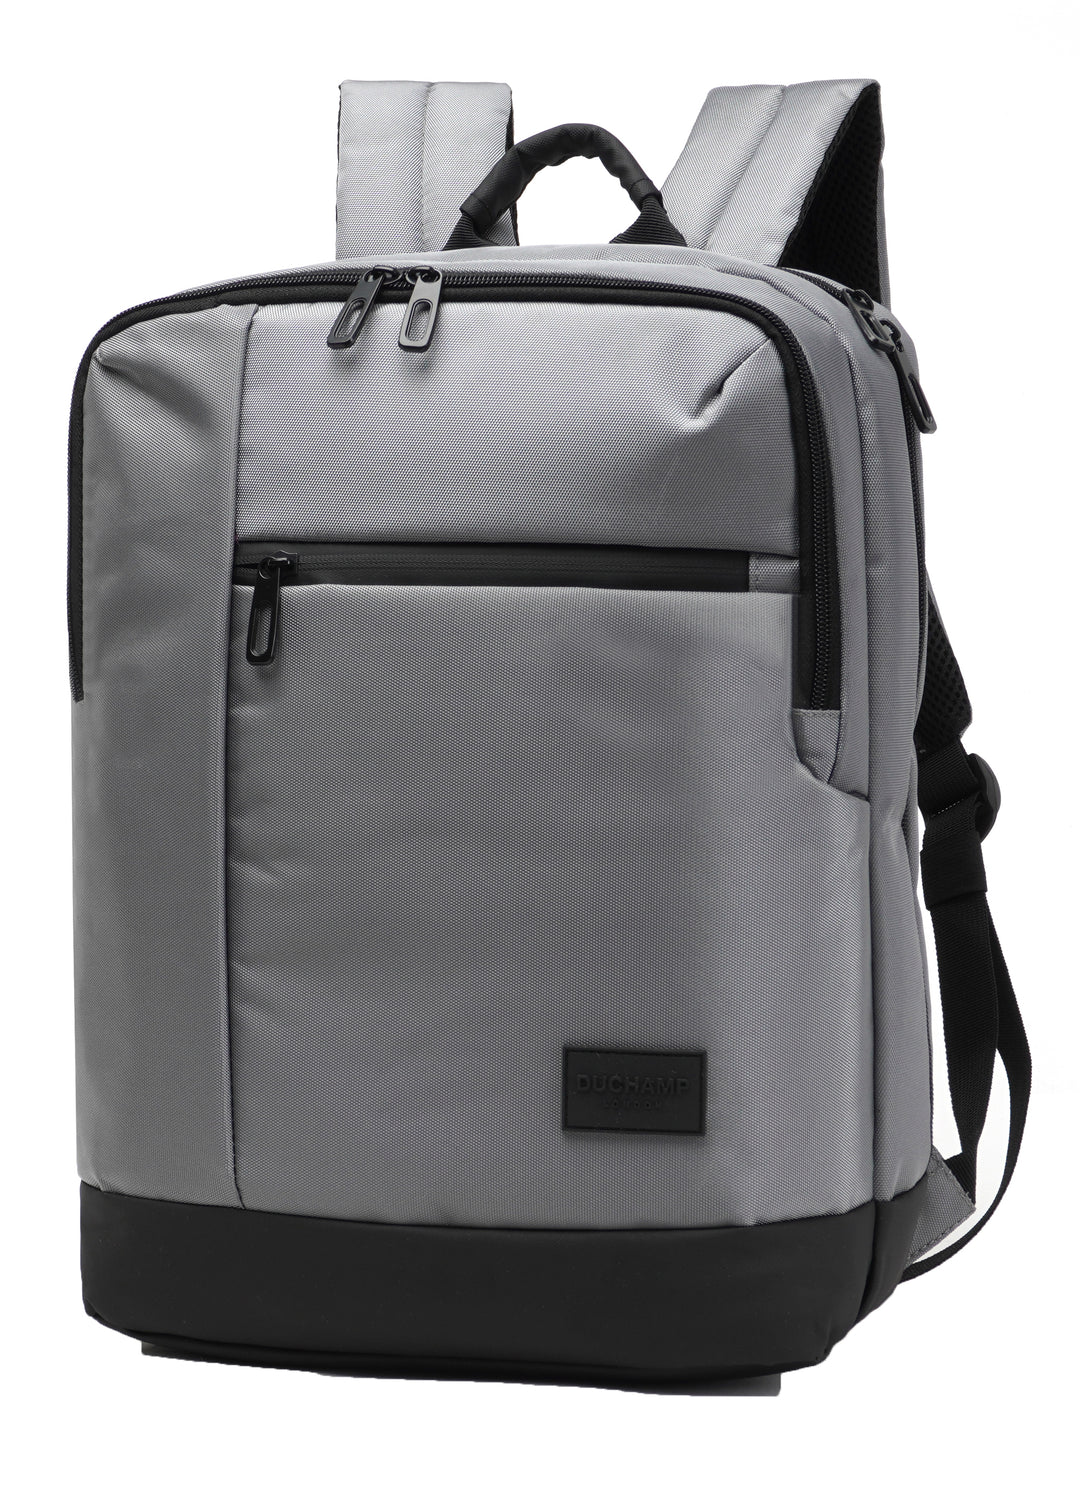 Duchamp Lightweight Laptop Backpack